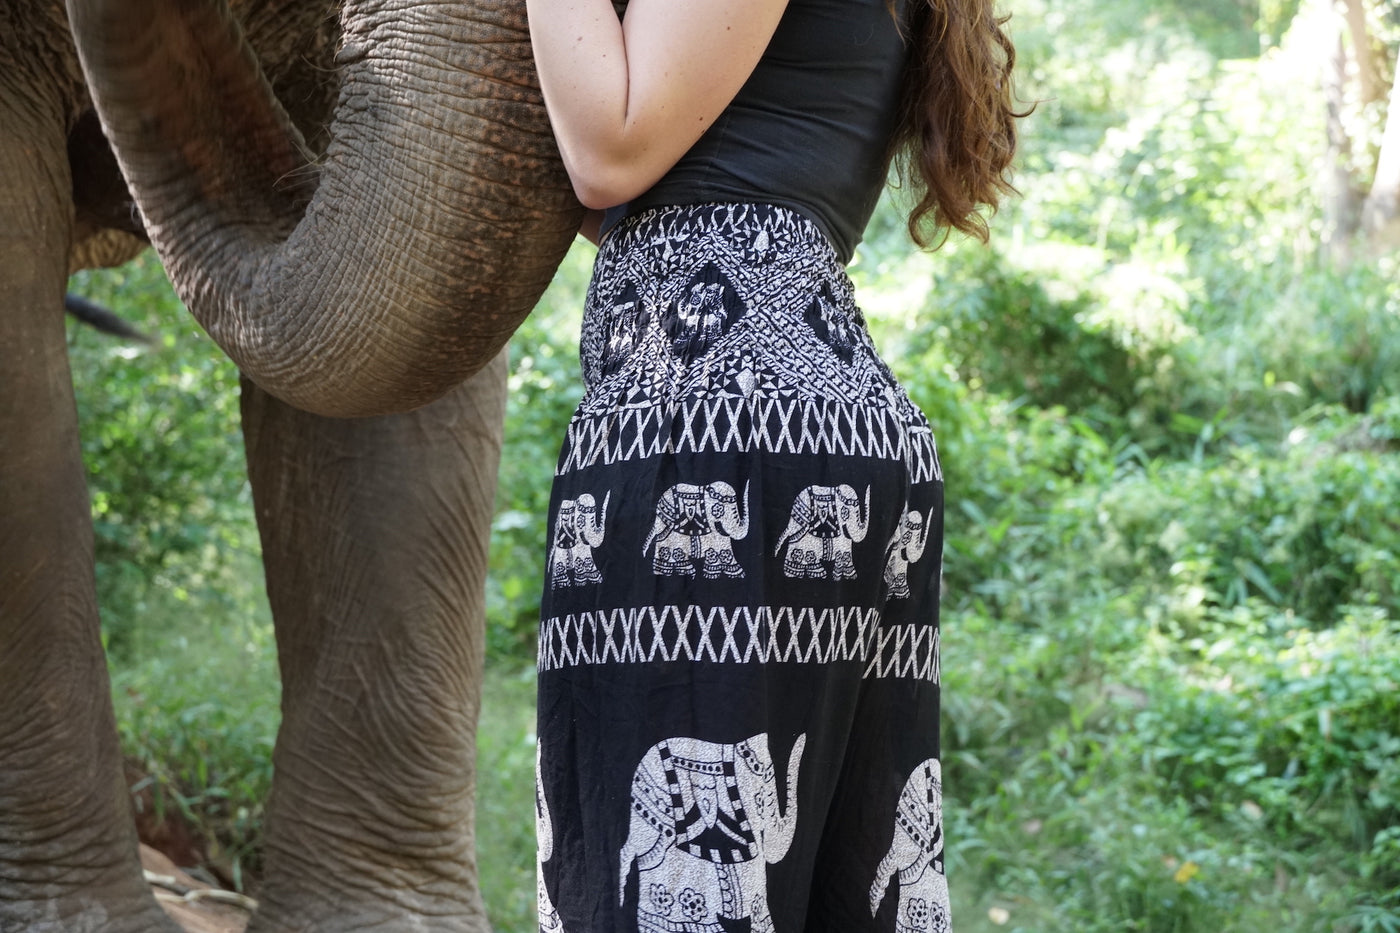 Elephant Pants #Outfit on #LivingAfterMidnite, www.livingaf…